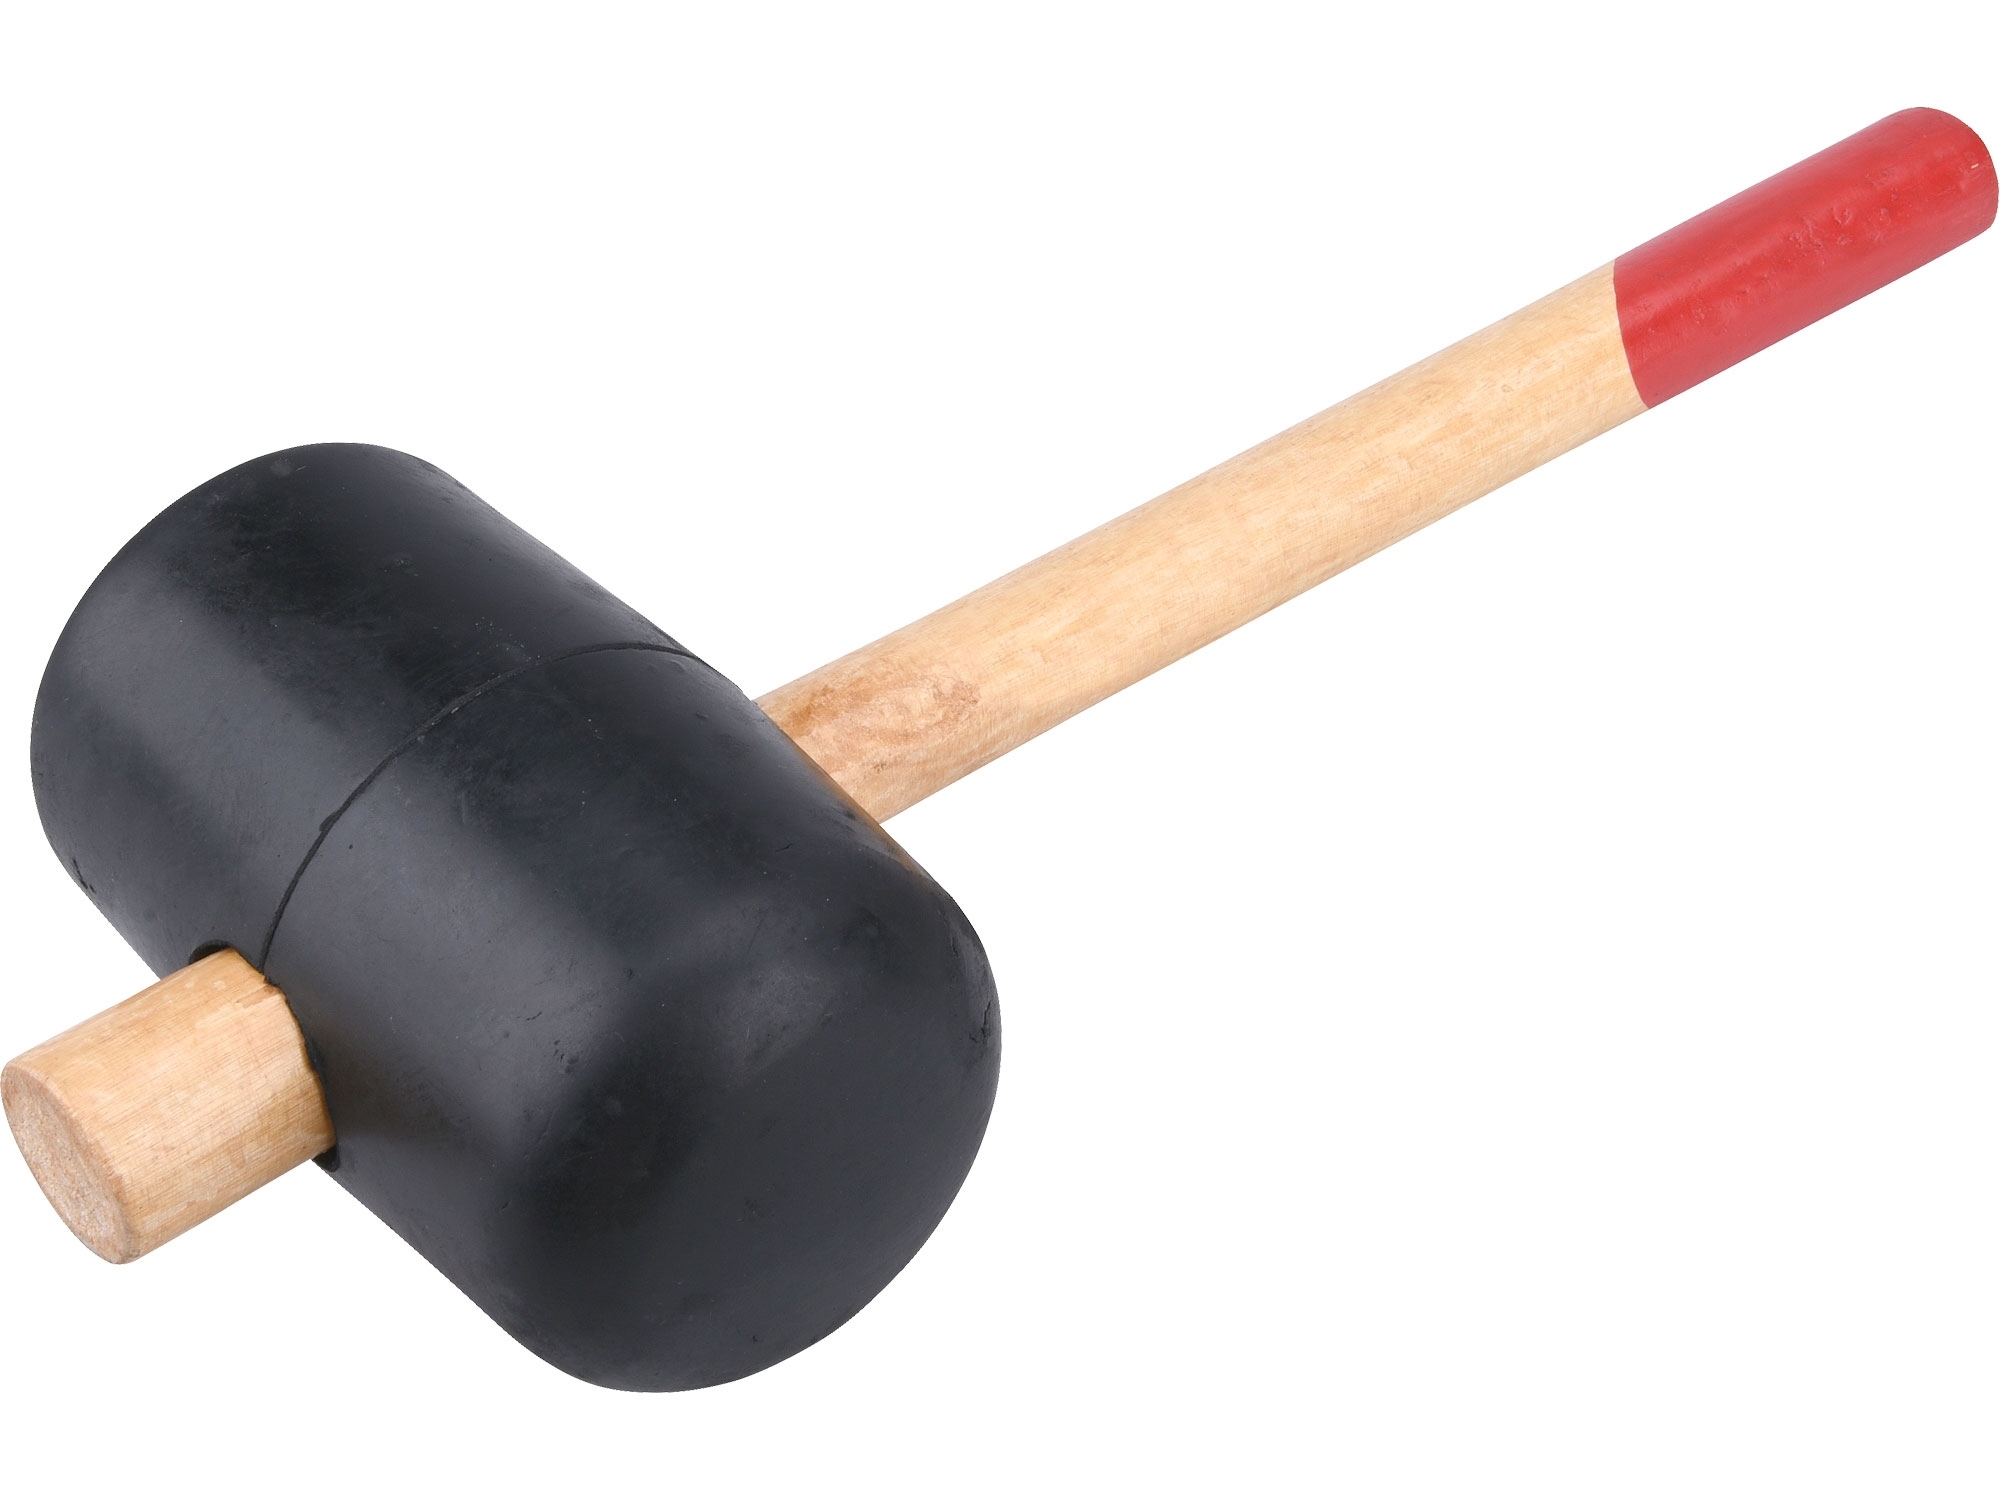 Palička gumová, černá, 900 g, s dřevěnou násadou, 85 mm, Extol Craft